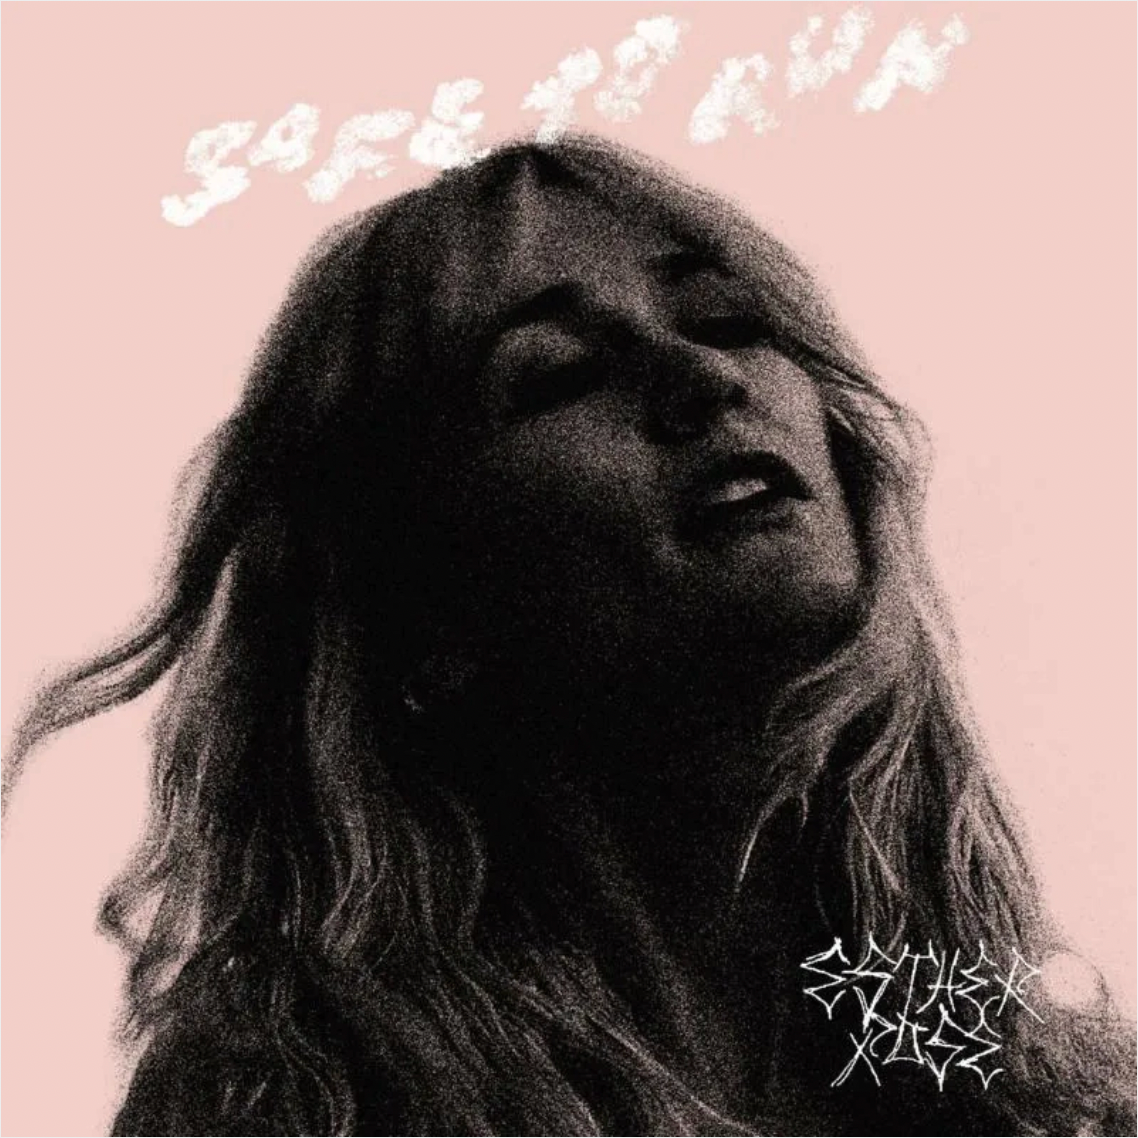 Esther Rose 'Safe To Run' LP